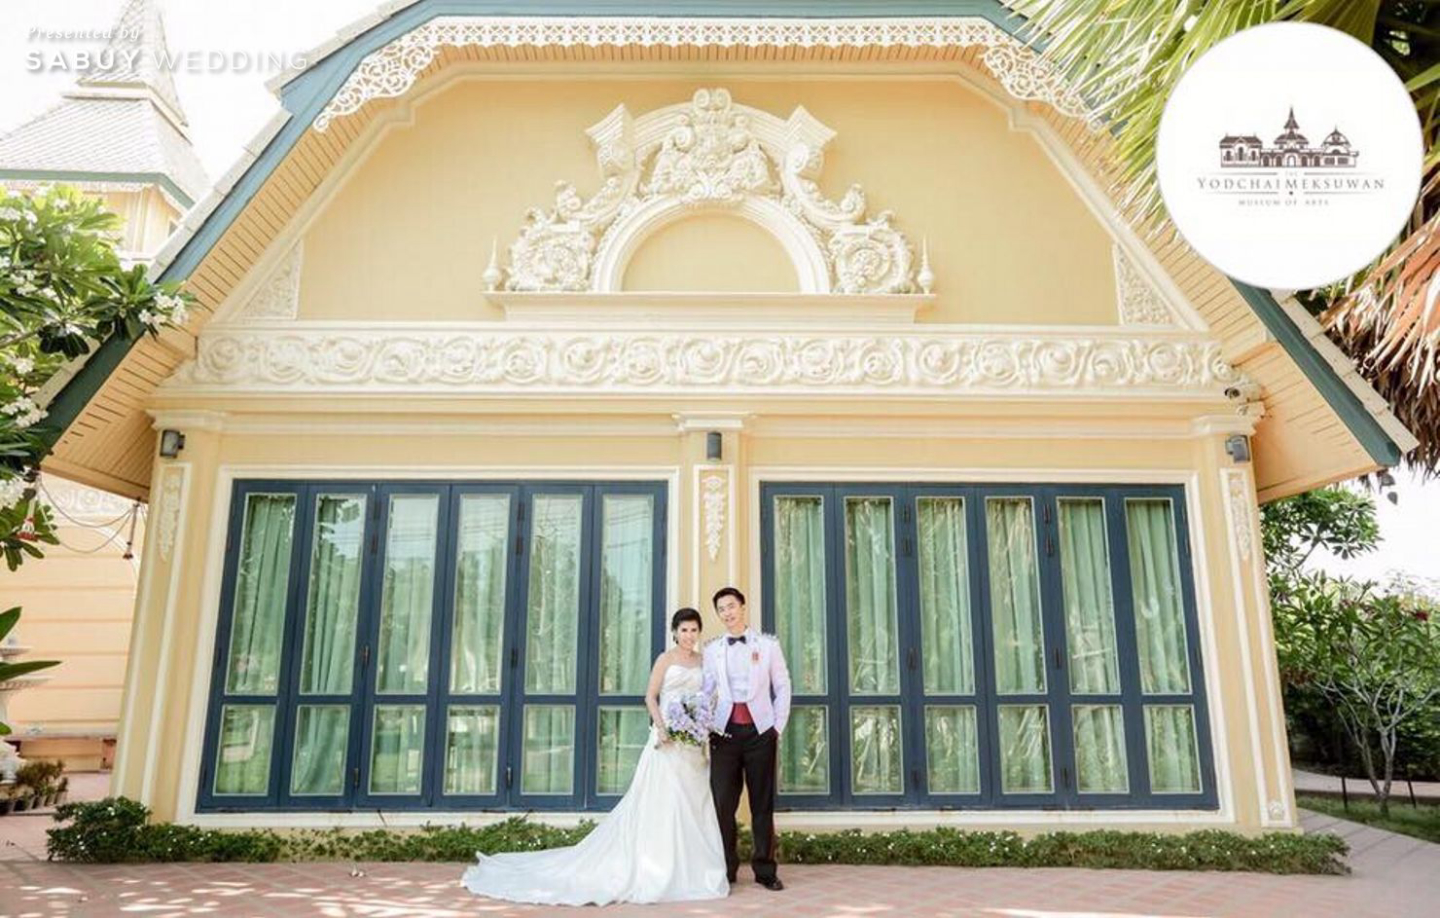 สถานที่แต่งงาน,สถานที่จัดงานแต่งงาน,Museum Wedding,บ่าวสาว Museum Wedding คฤหาสน์แห่งศิลป์ สวยขลังแบบไทยประยุกต์